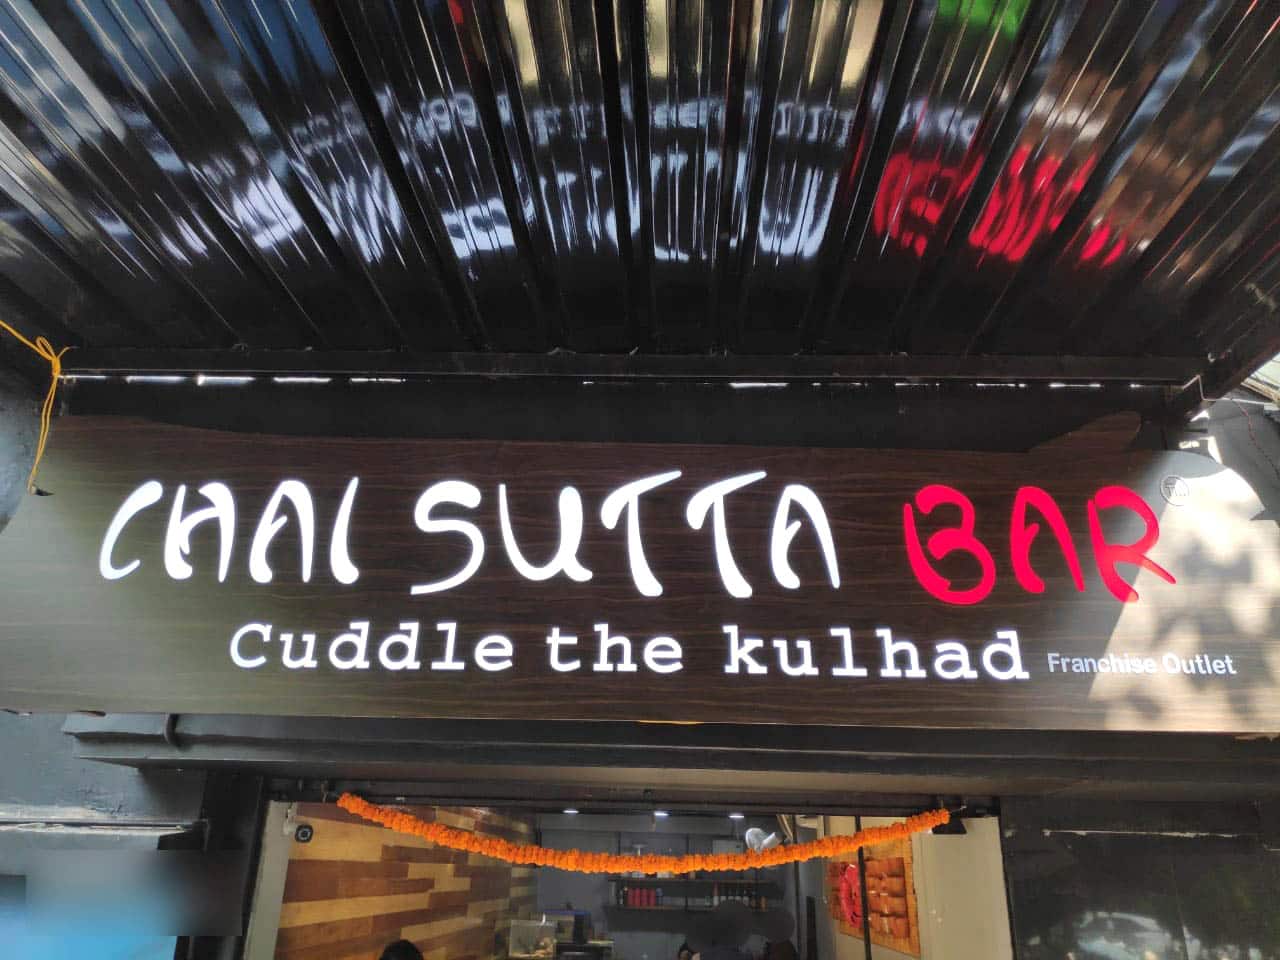 Chai Sutta Bar in Nanded || चाय सुट्टा बार पहिल्यांदाच नांदेडमध्ये - YouTube